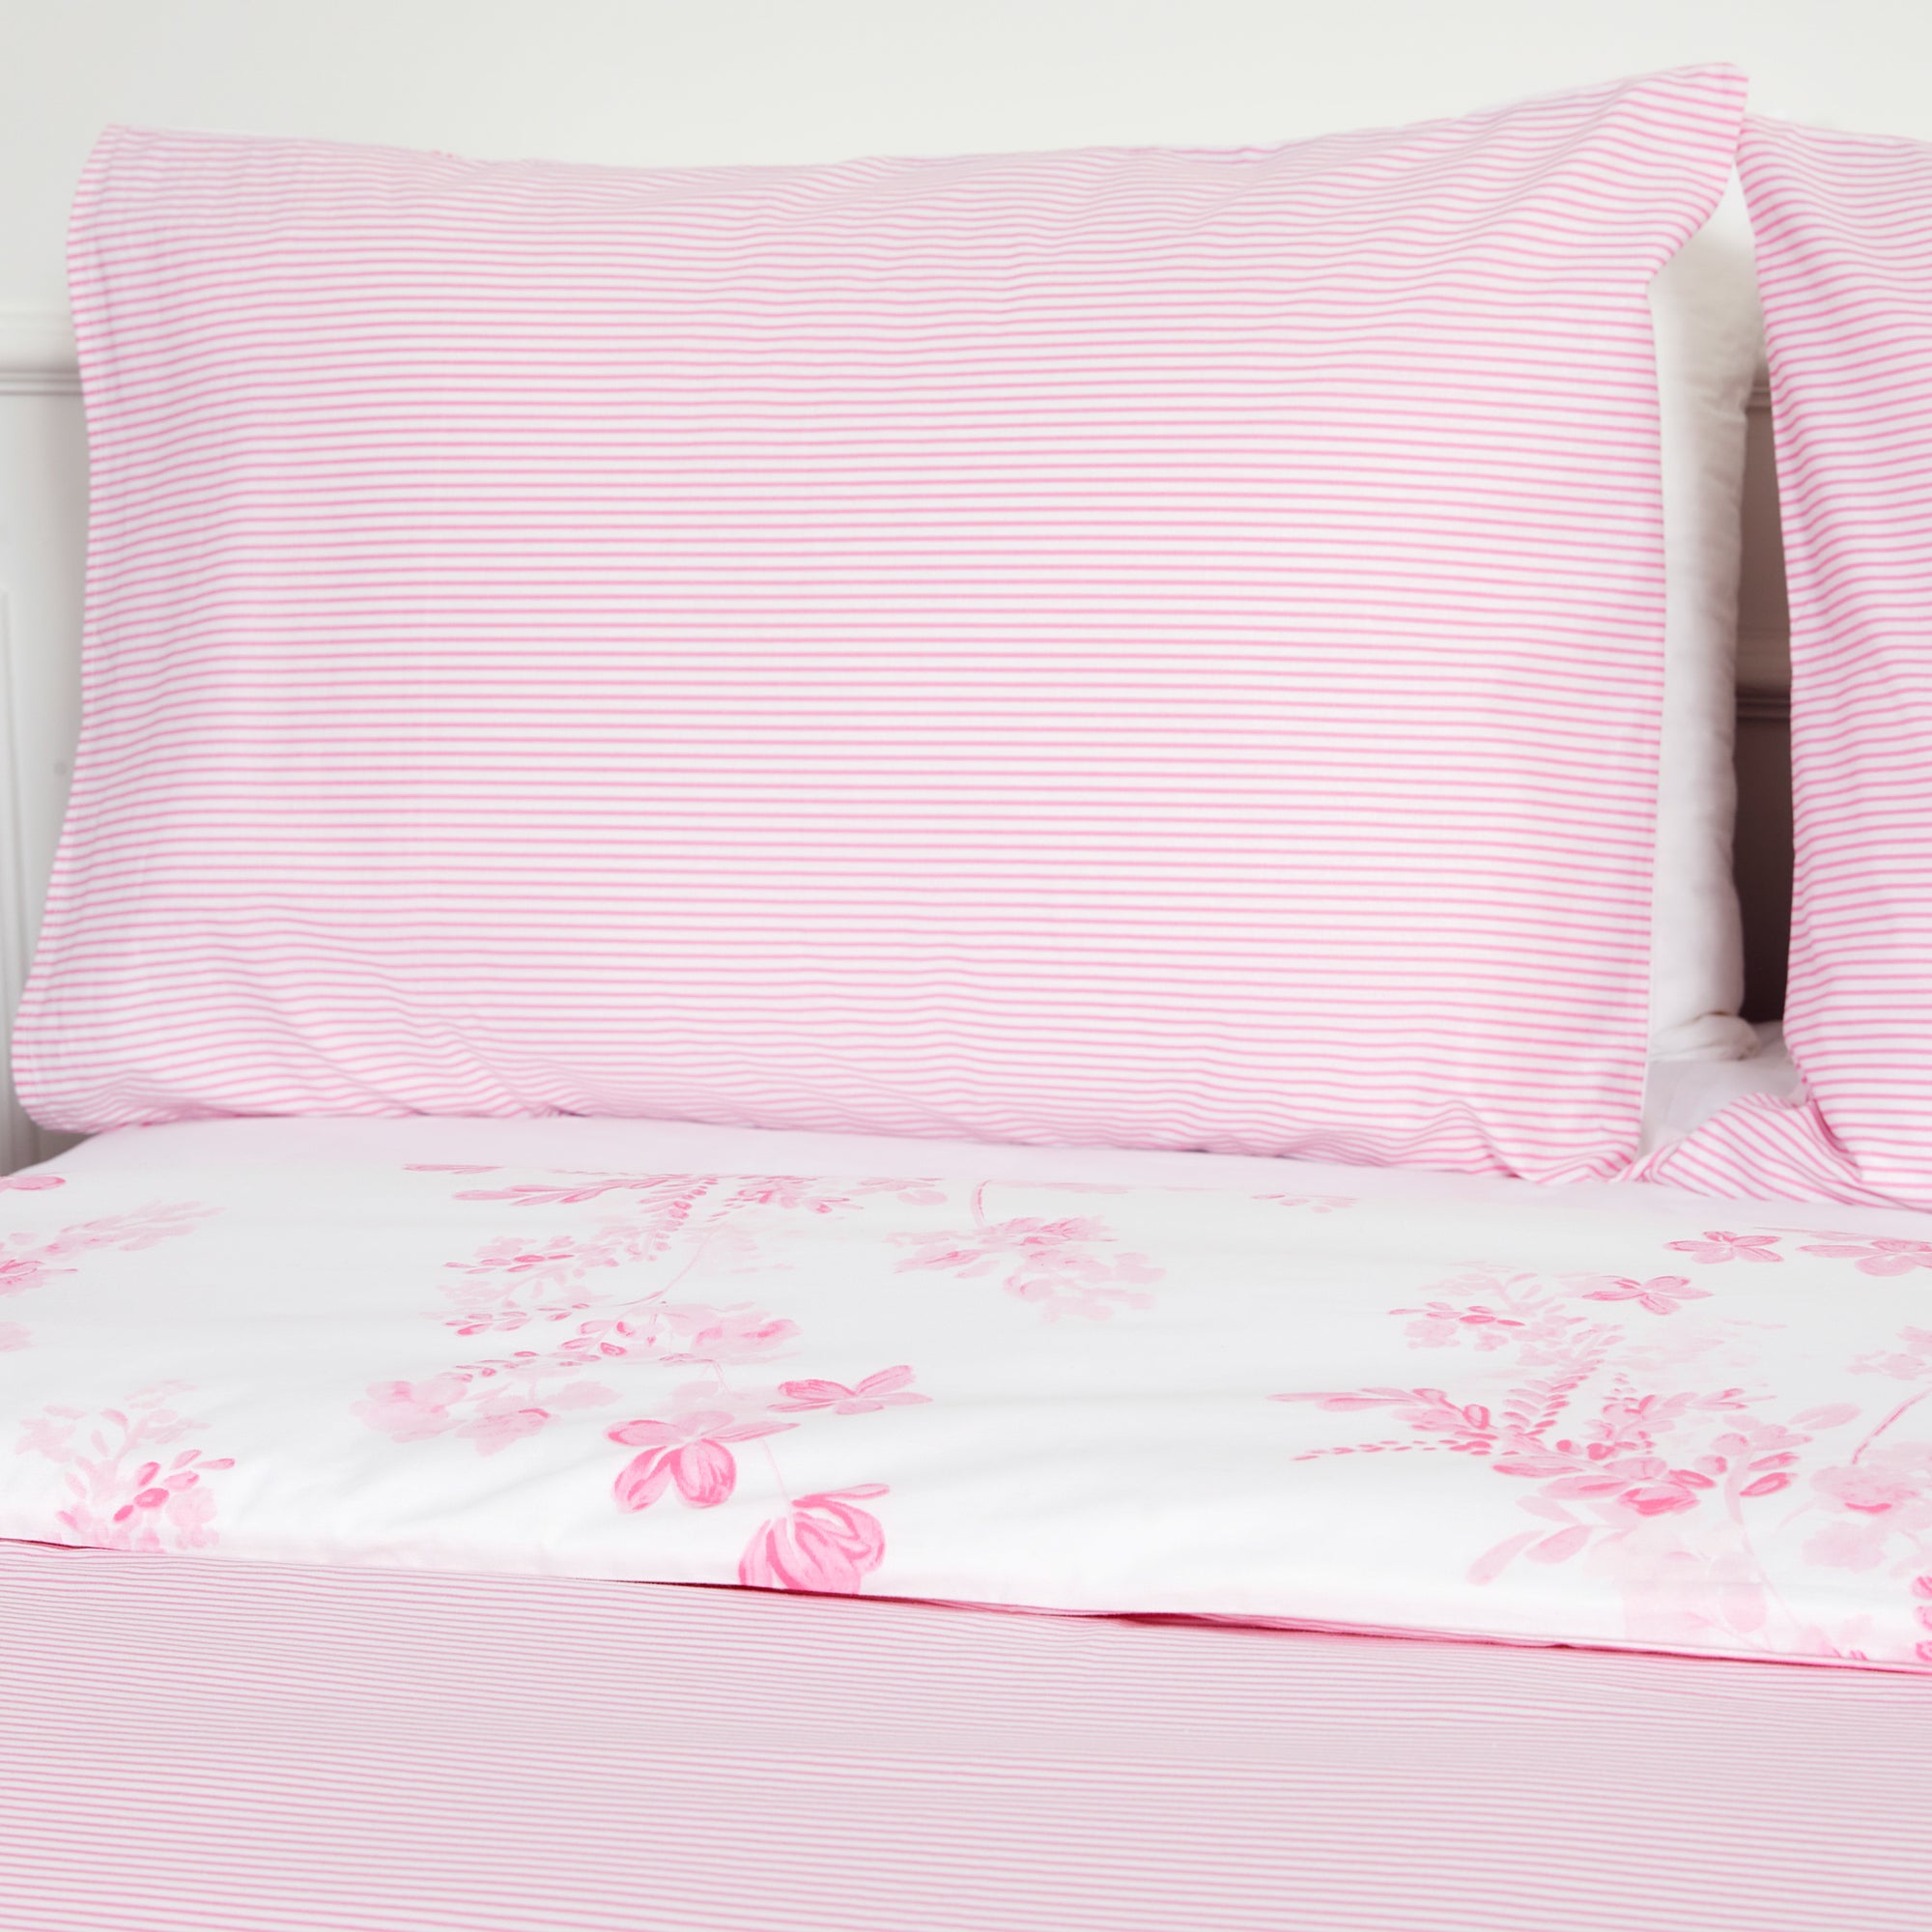 Parure de lit avec housse de couette en coton à fleurs roses Sevilla